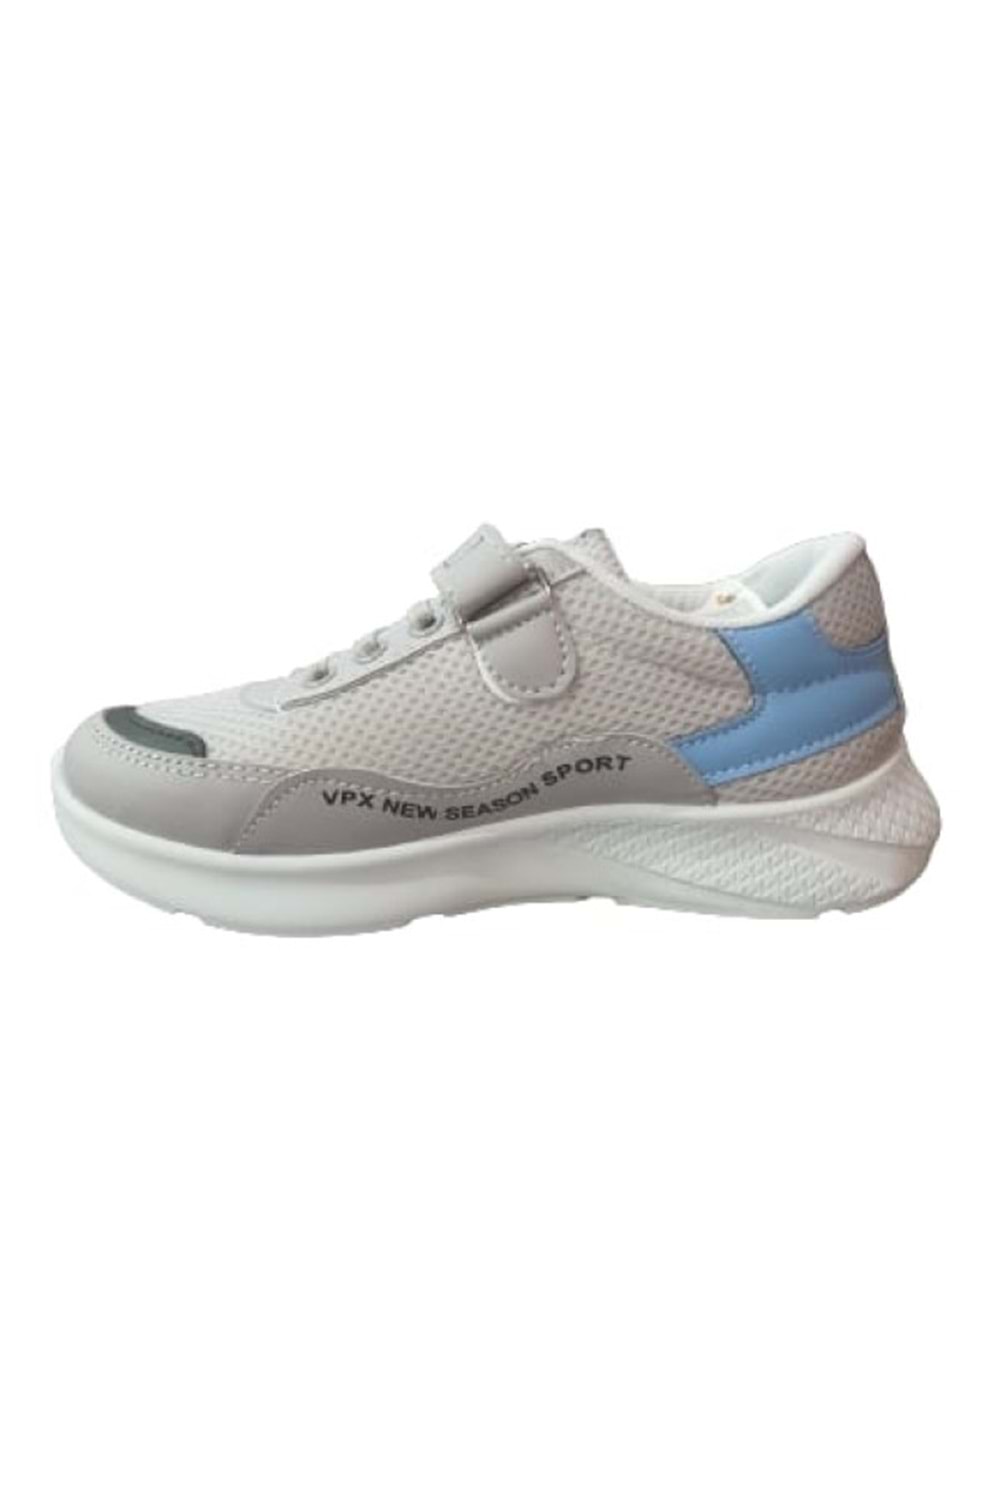 Bolimex ÇocuK Kız Cırtlı Bağcıklı Sneakers Spor Ayakkabı B-00233 - Gri